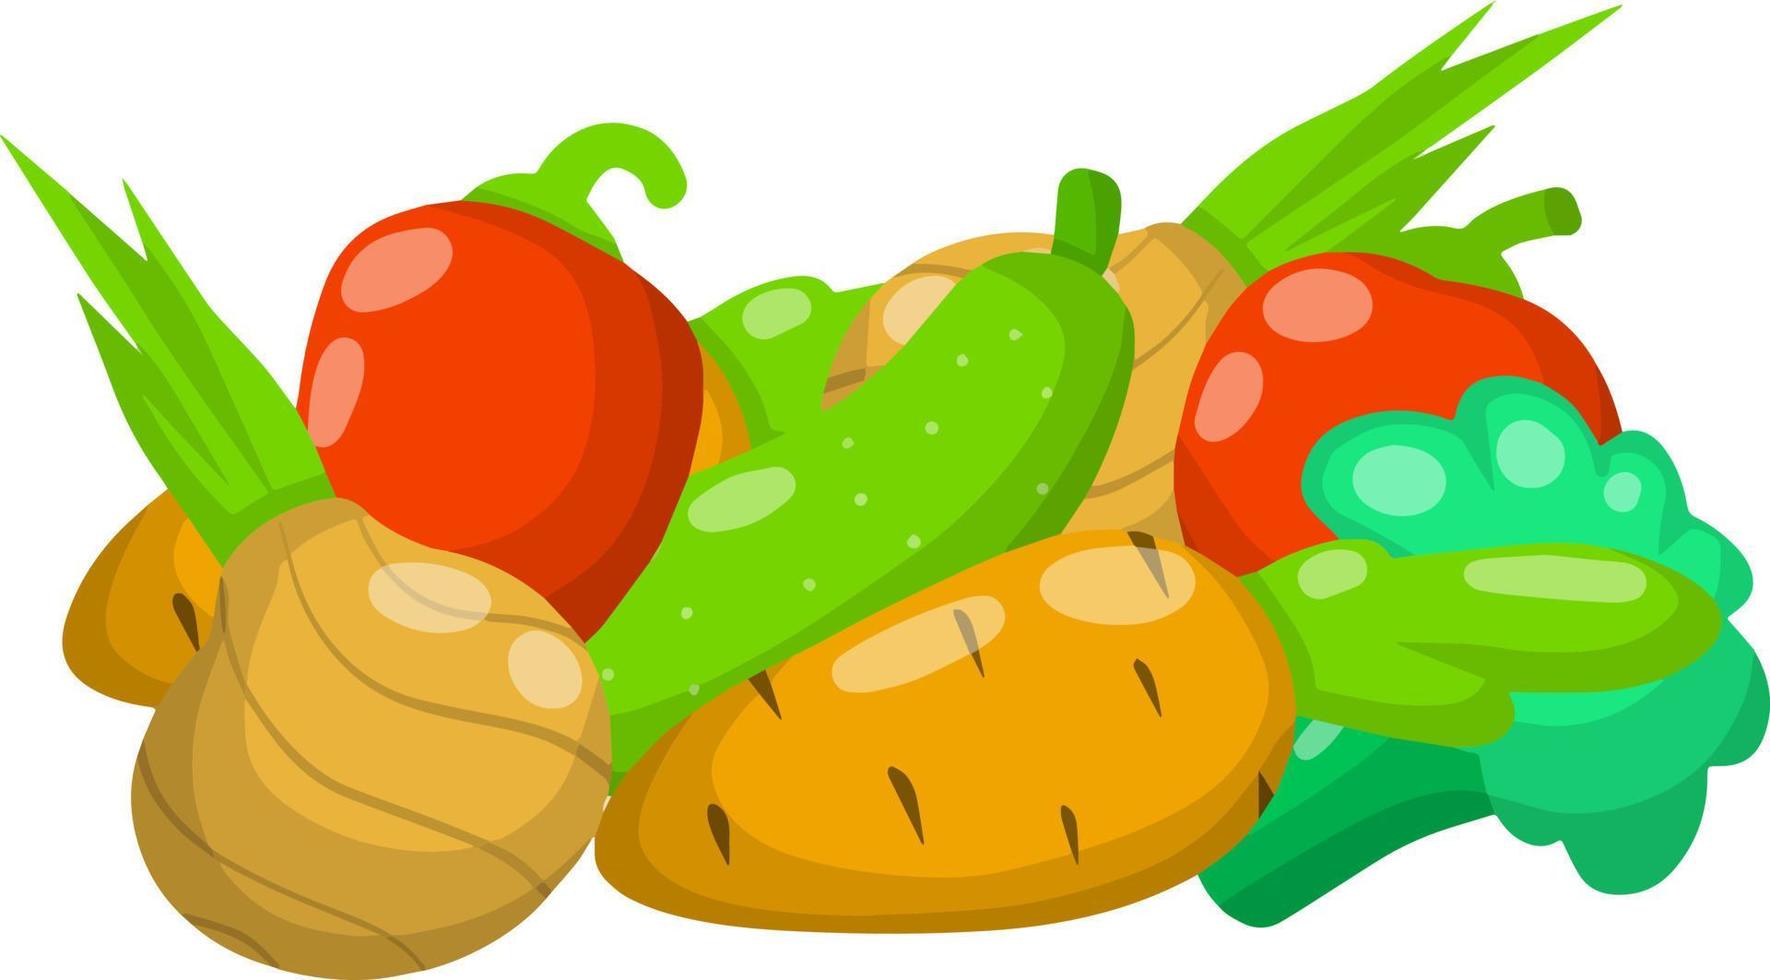 ilustração plana dos desenhos animados. produtos naturais frescos da aldeia. tomate e pimenta, cebola com pepino, brócolis, cenoura vetor